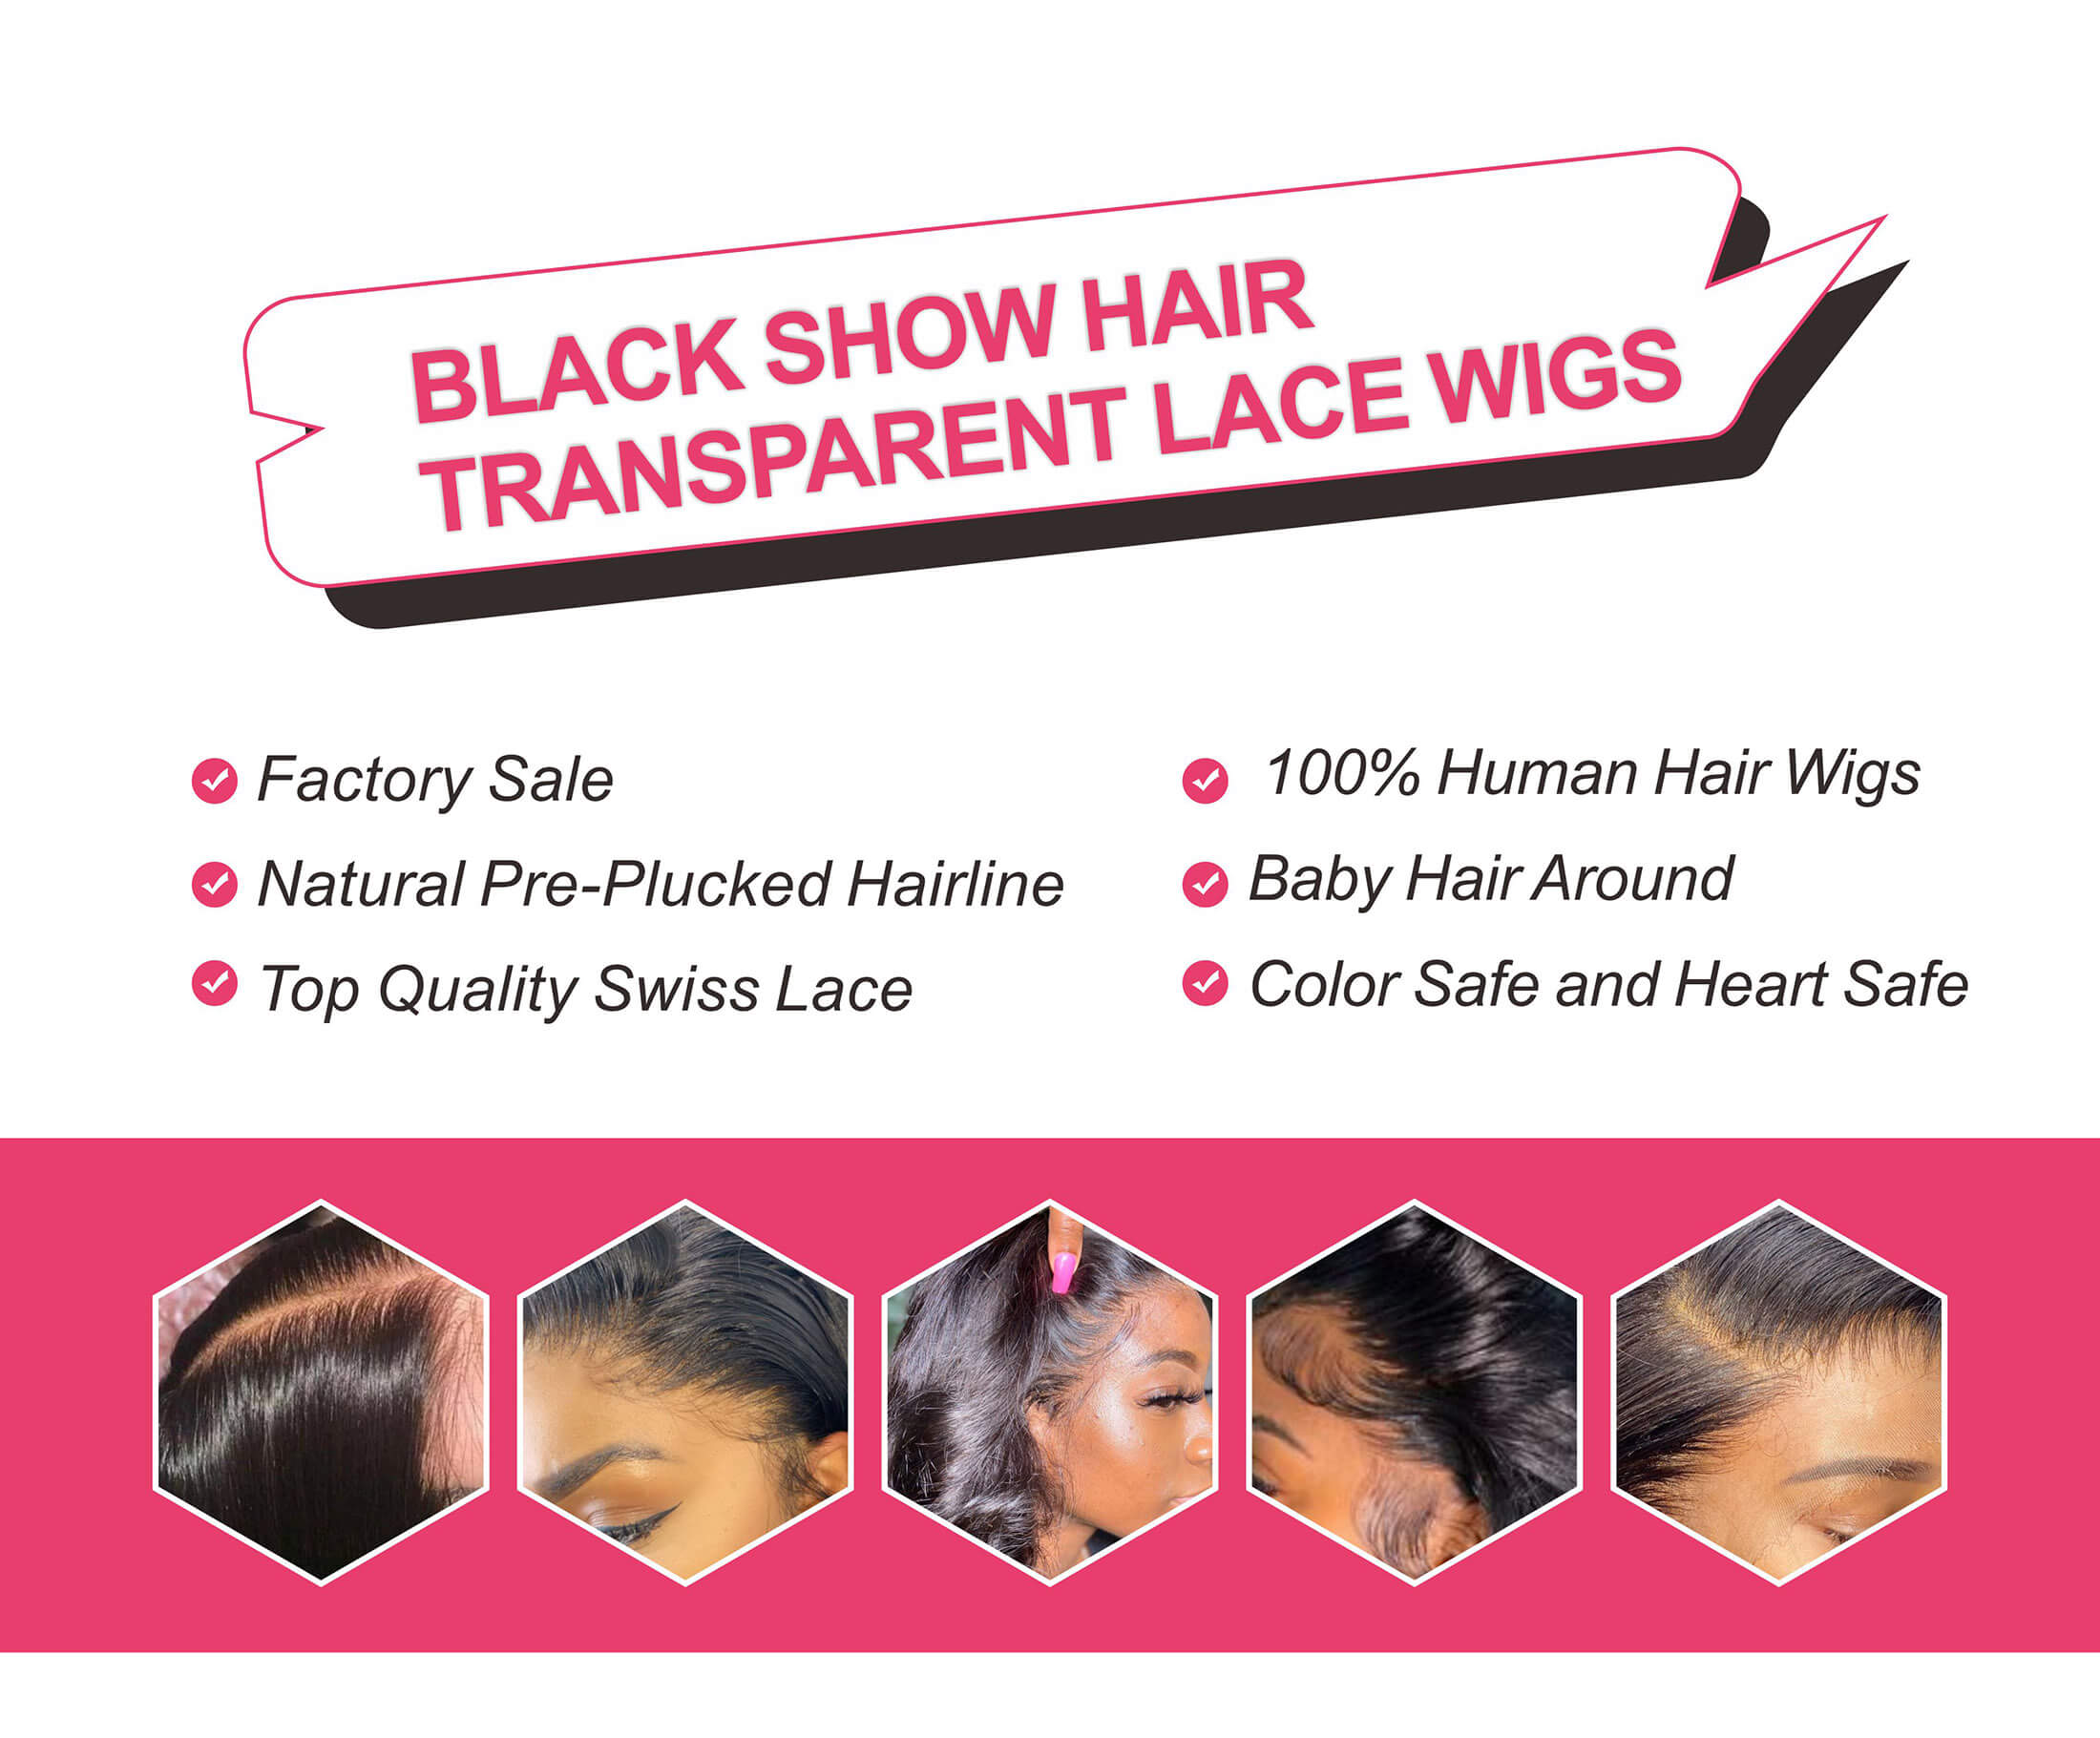 Black Show Hair transparent lace wigs